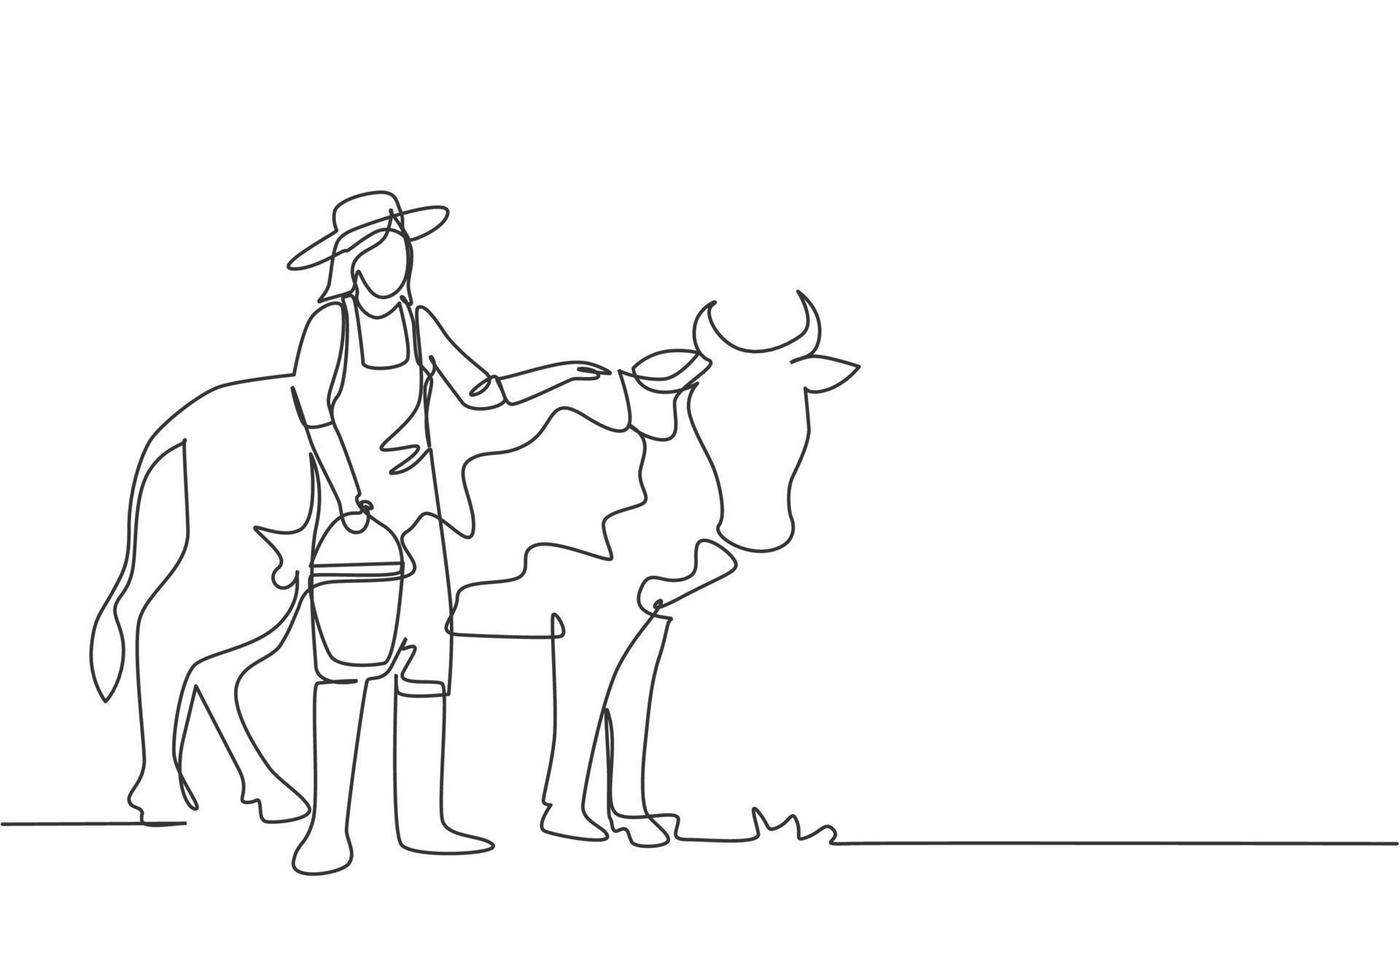 dibujo de una sola línea de una joven agricultora frotando la vaca mientras lleva un balde de agua. concepto mínimo de desafío agrícola. Ilustración de vector gráfico de diseño de dibujo de línea continua moderna.